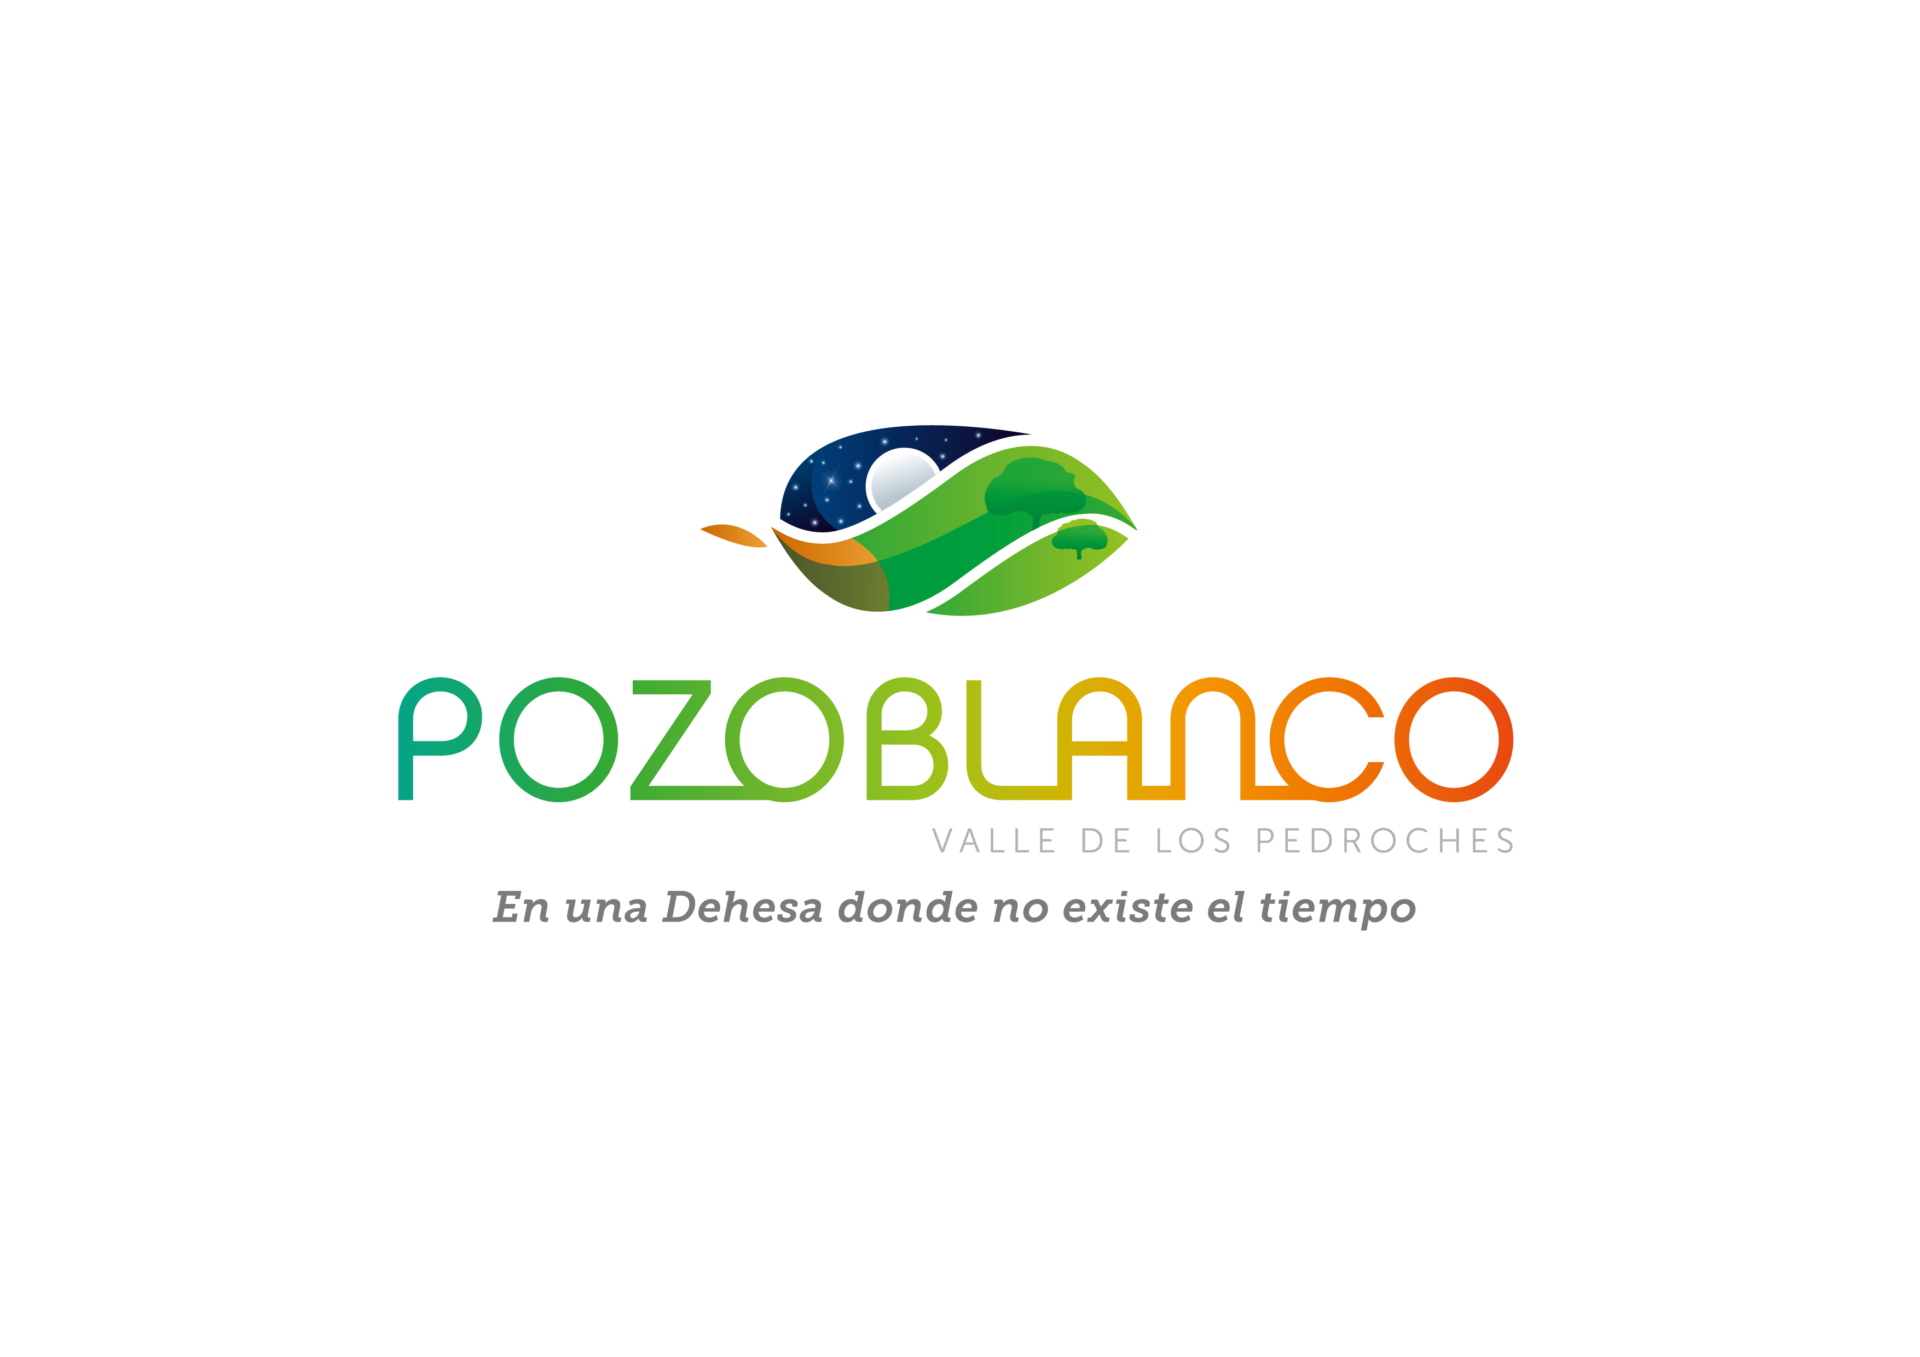 El Ayuntamiento inicia una nueva etapa en la promoción turística de Pozoblanco con una marca que difunde los valores de la ciudad y su comarca 1